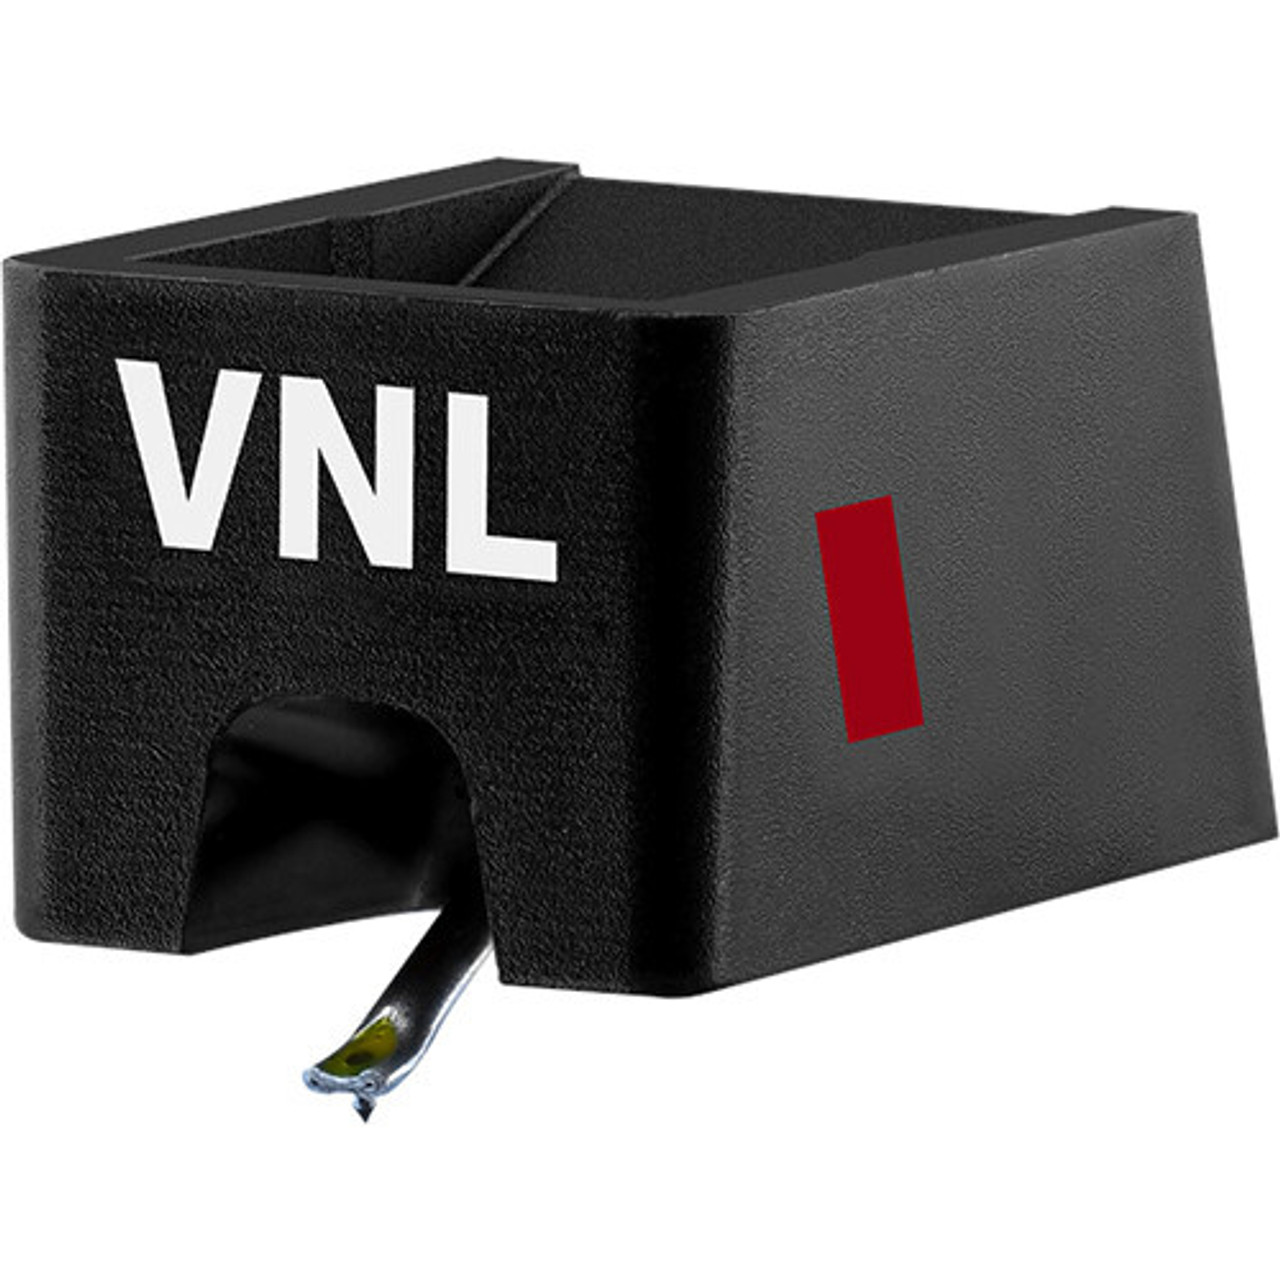 Ortofon Ortofon VNL I Moving Magnet Cartridge (Flexible)